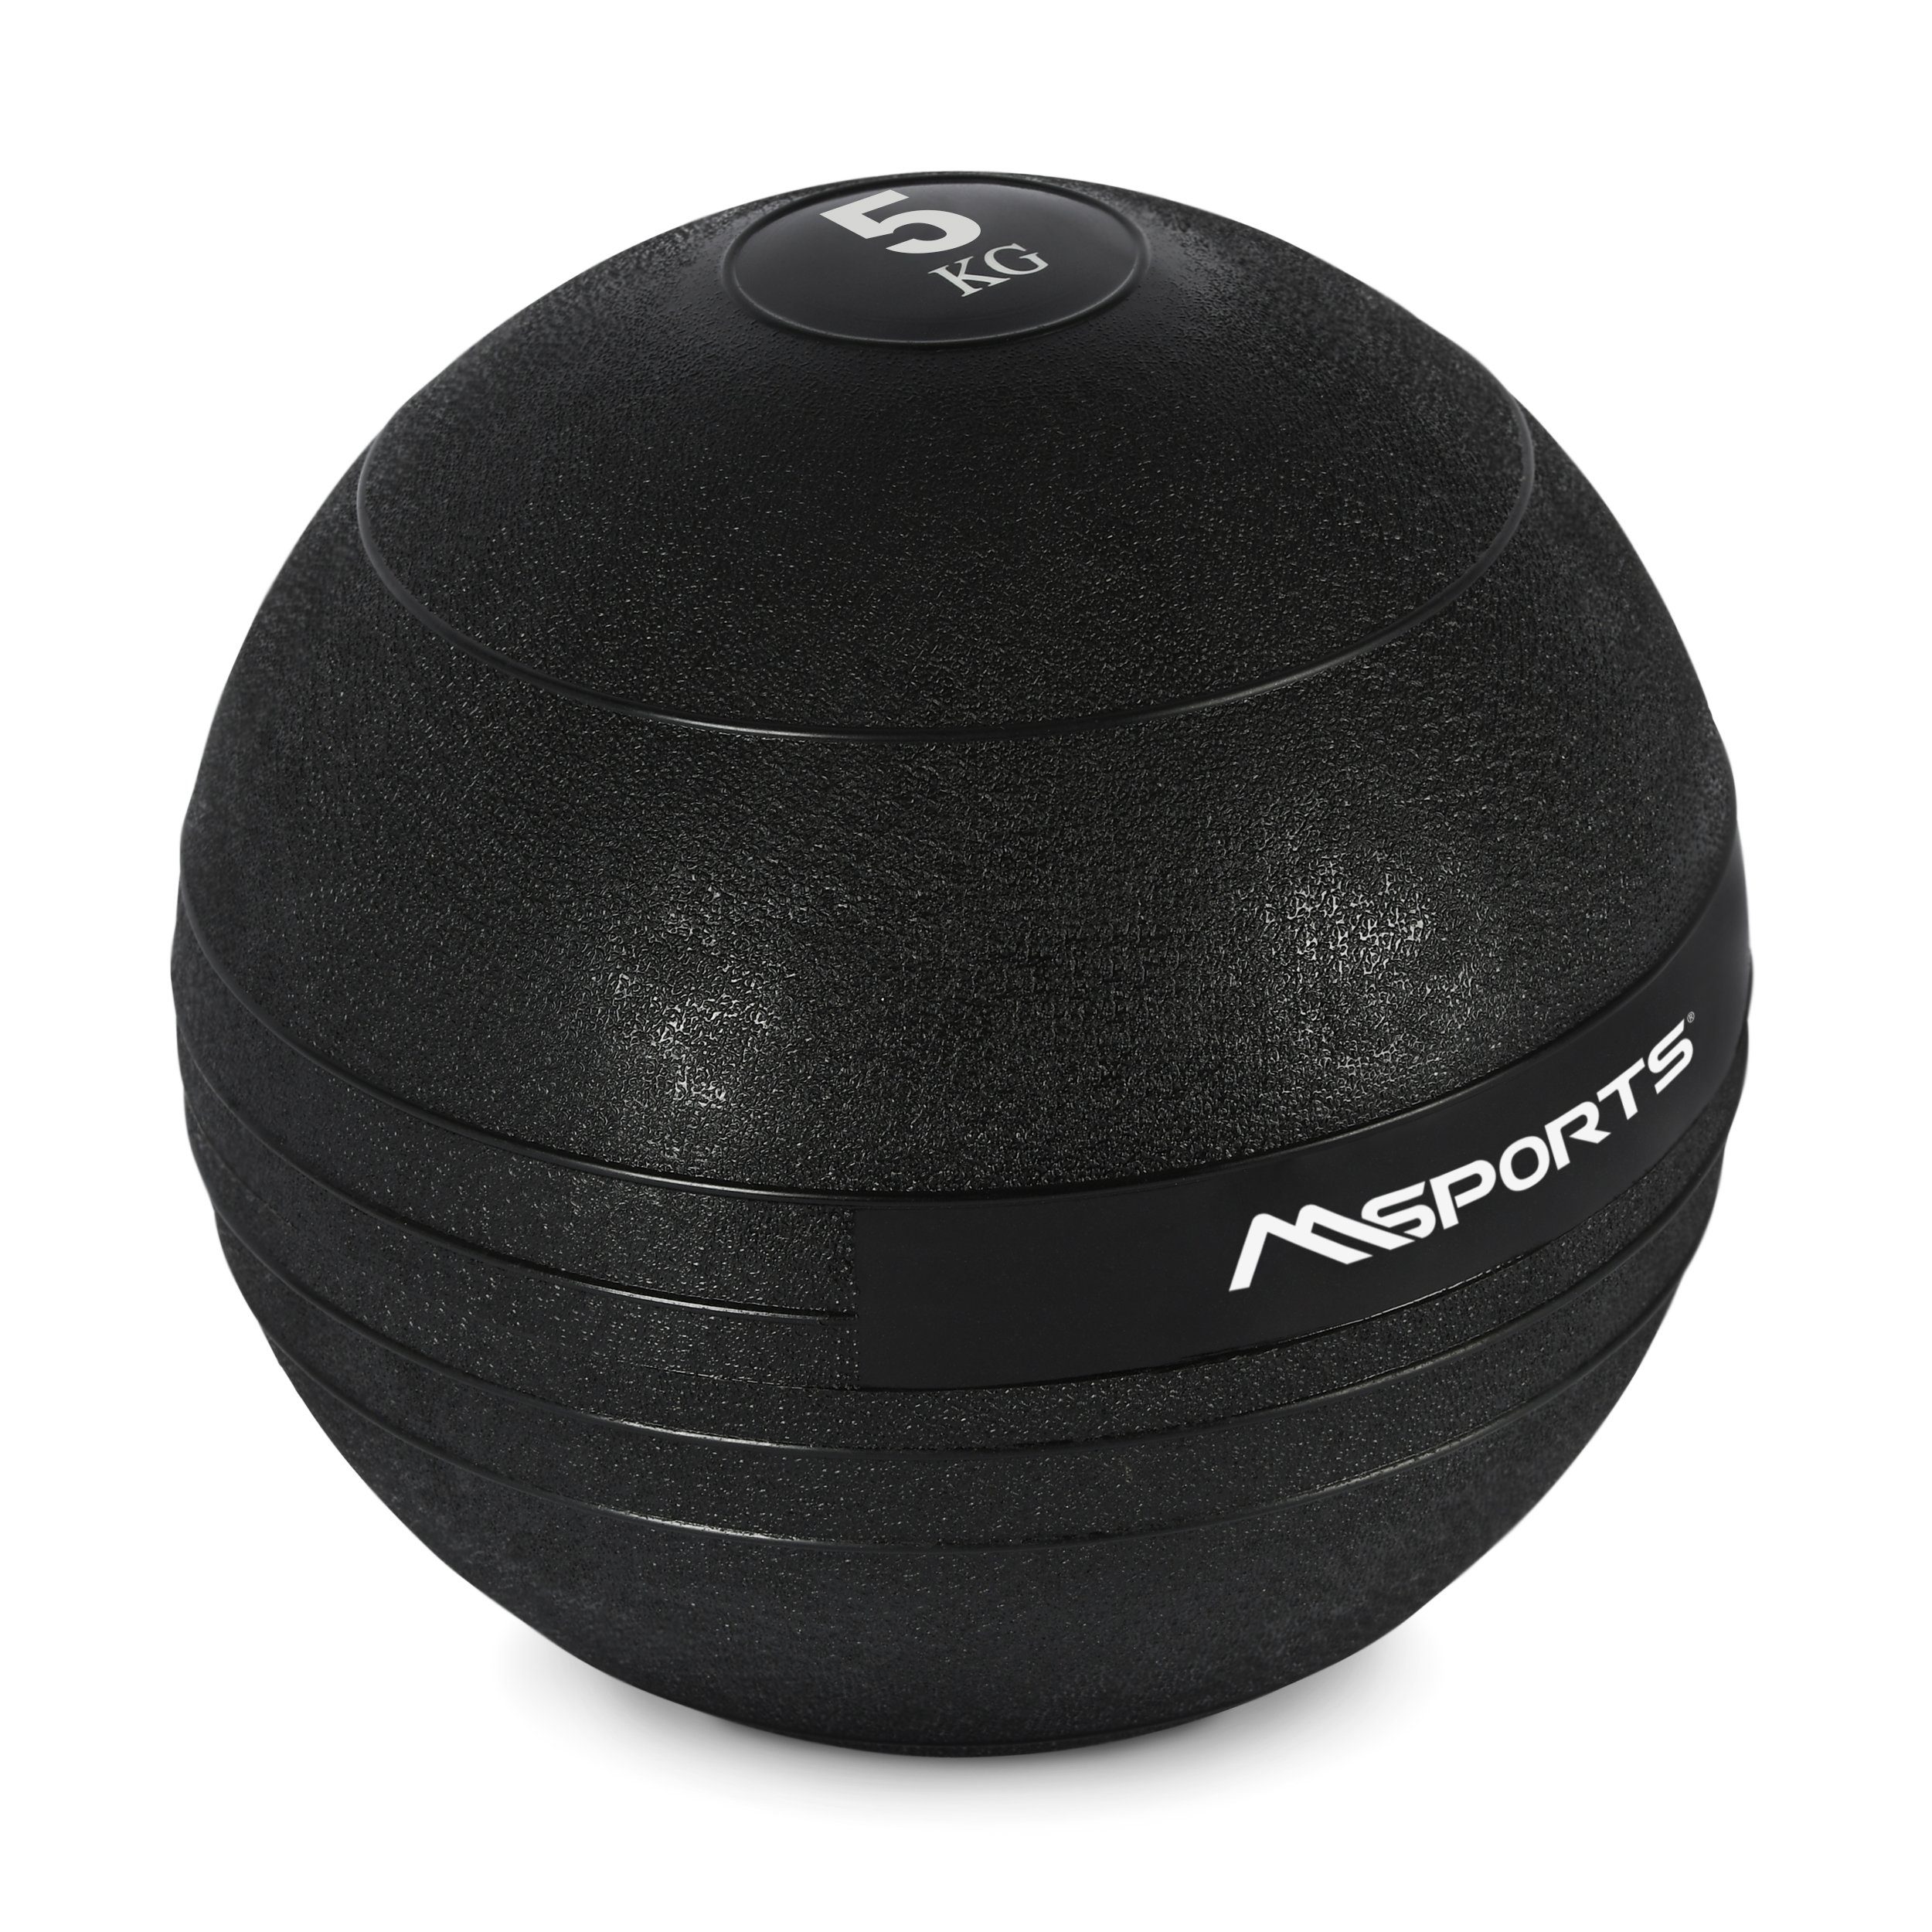 Medizinball Ball MSports® 5 Medizinball 3-20 Wall-Ball Slam Gewichtsball kg kg